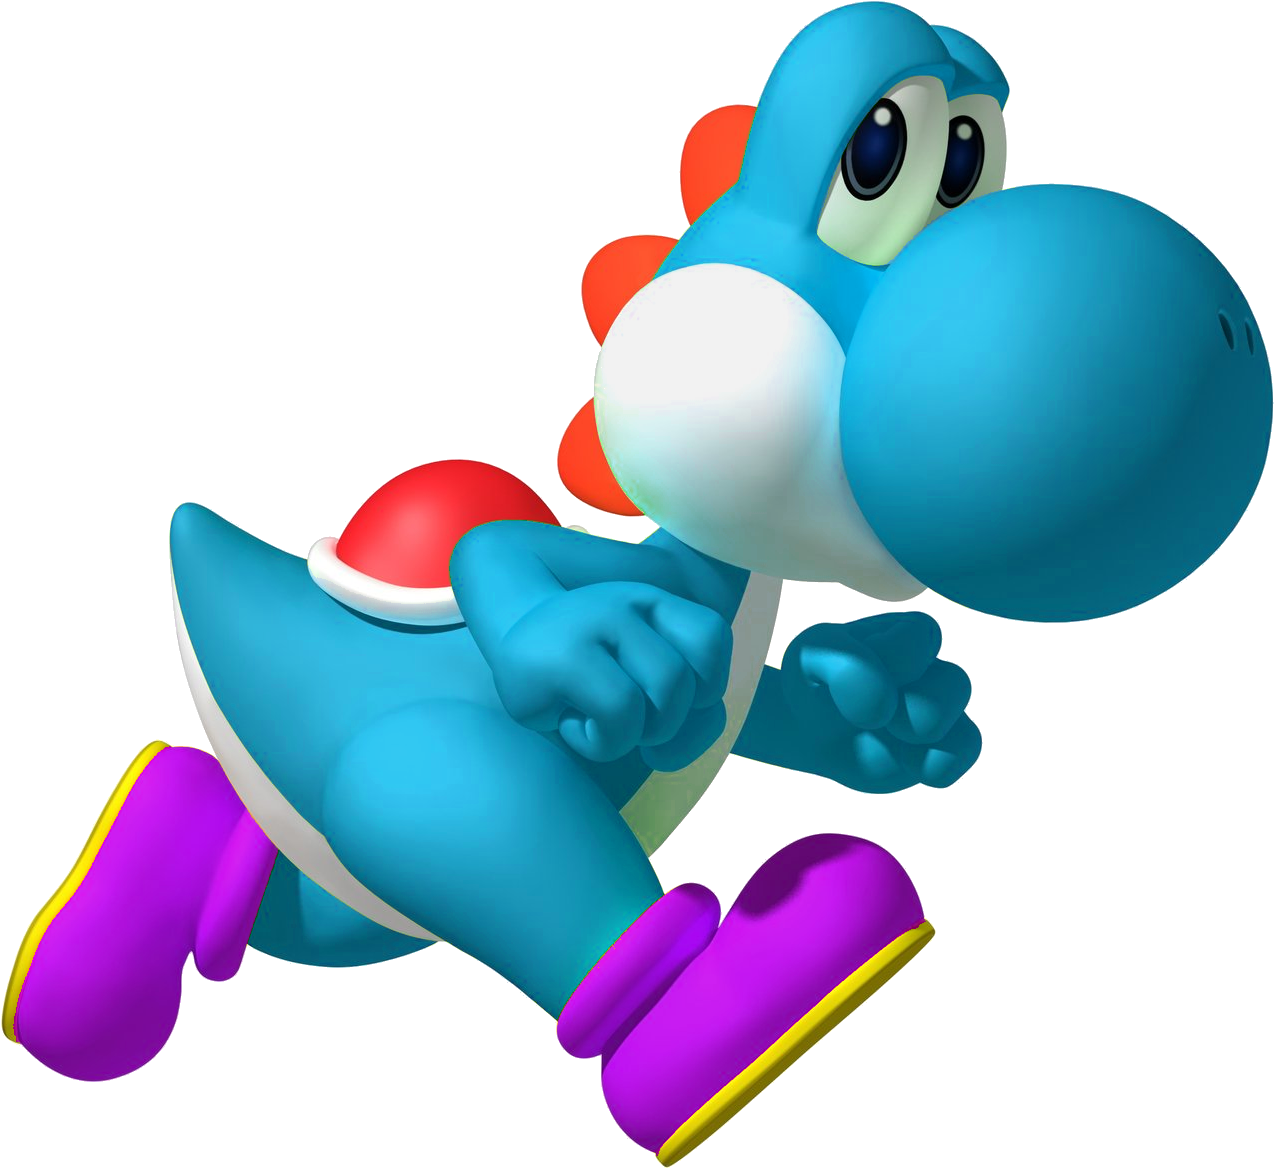 A Blue Cartoon Character Running